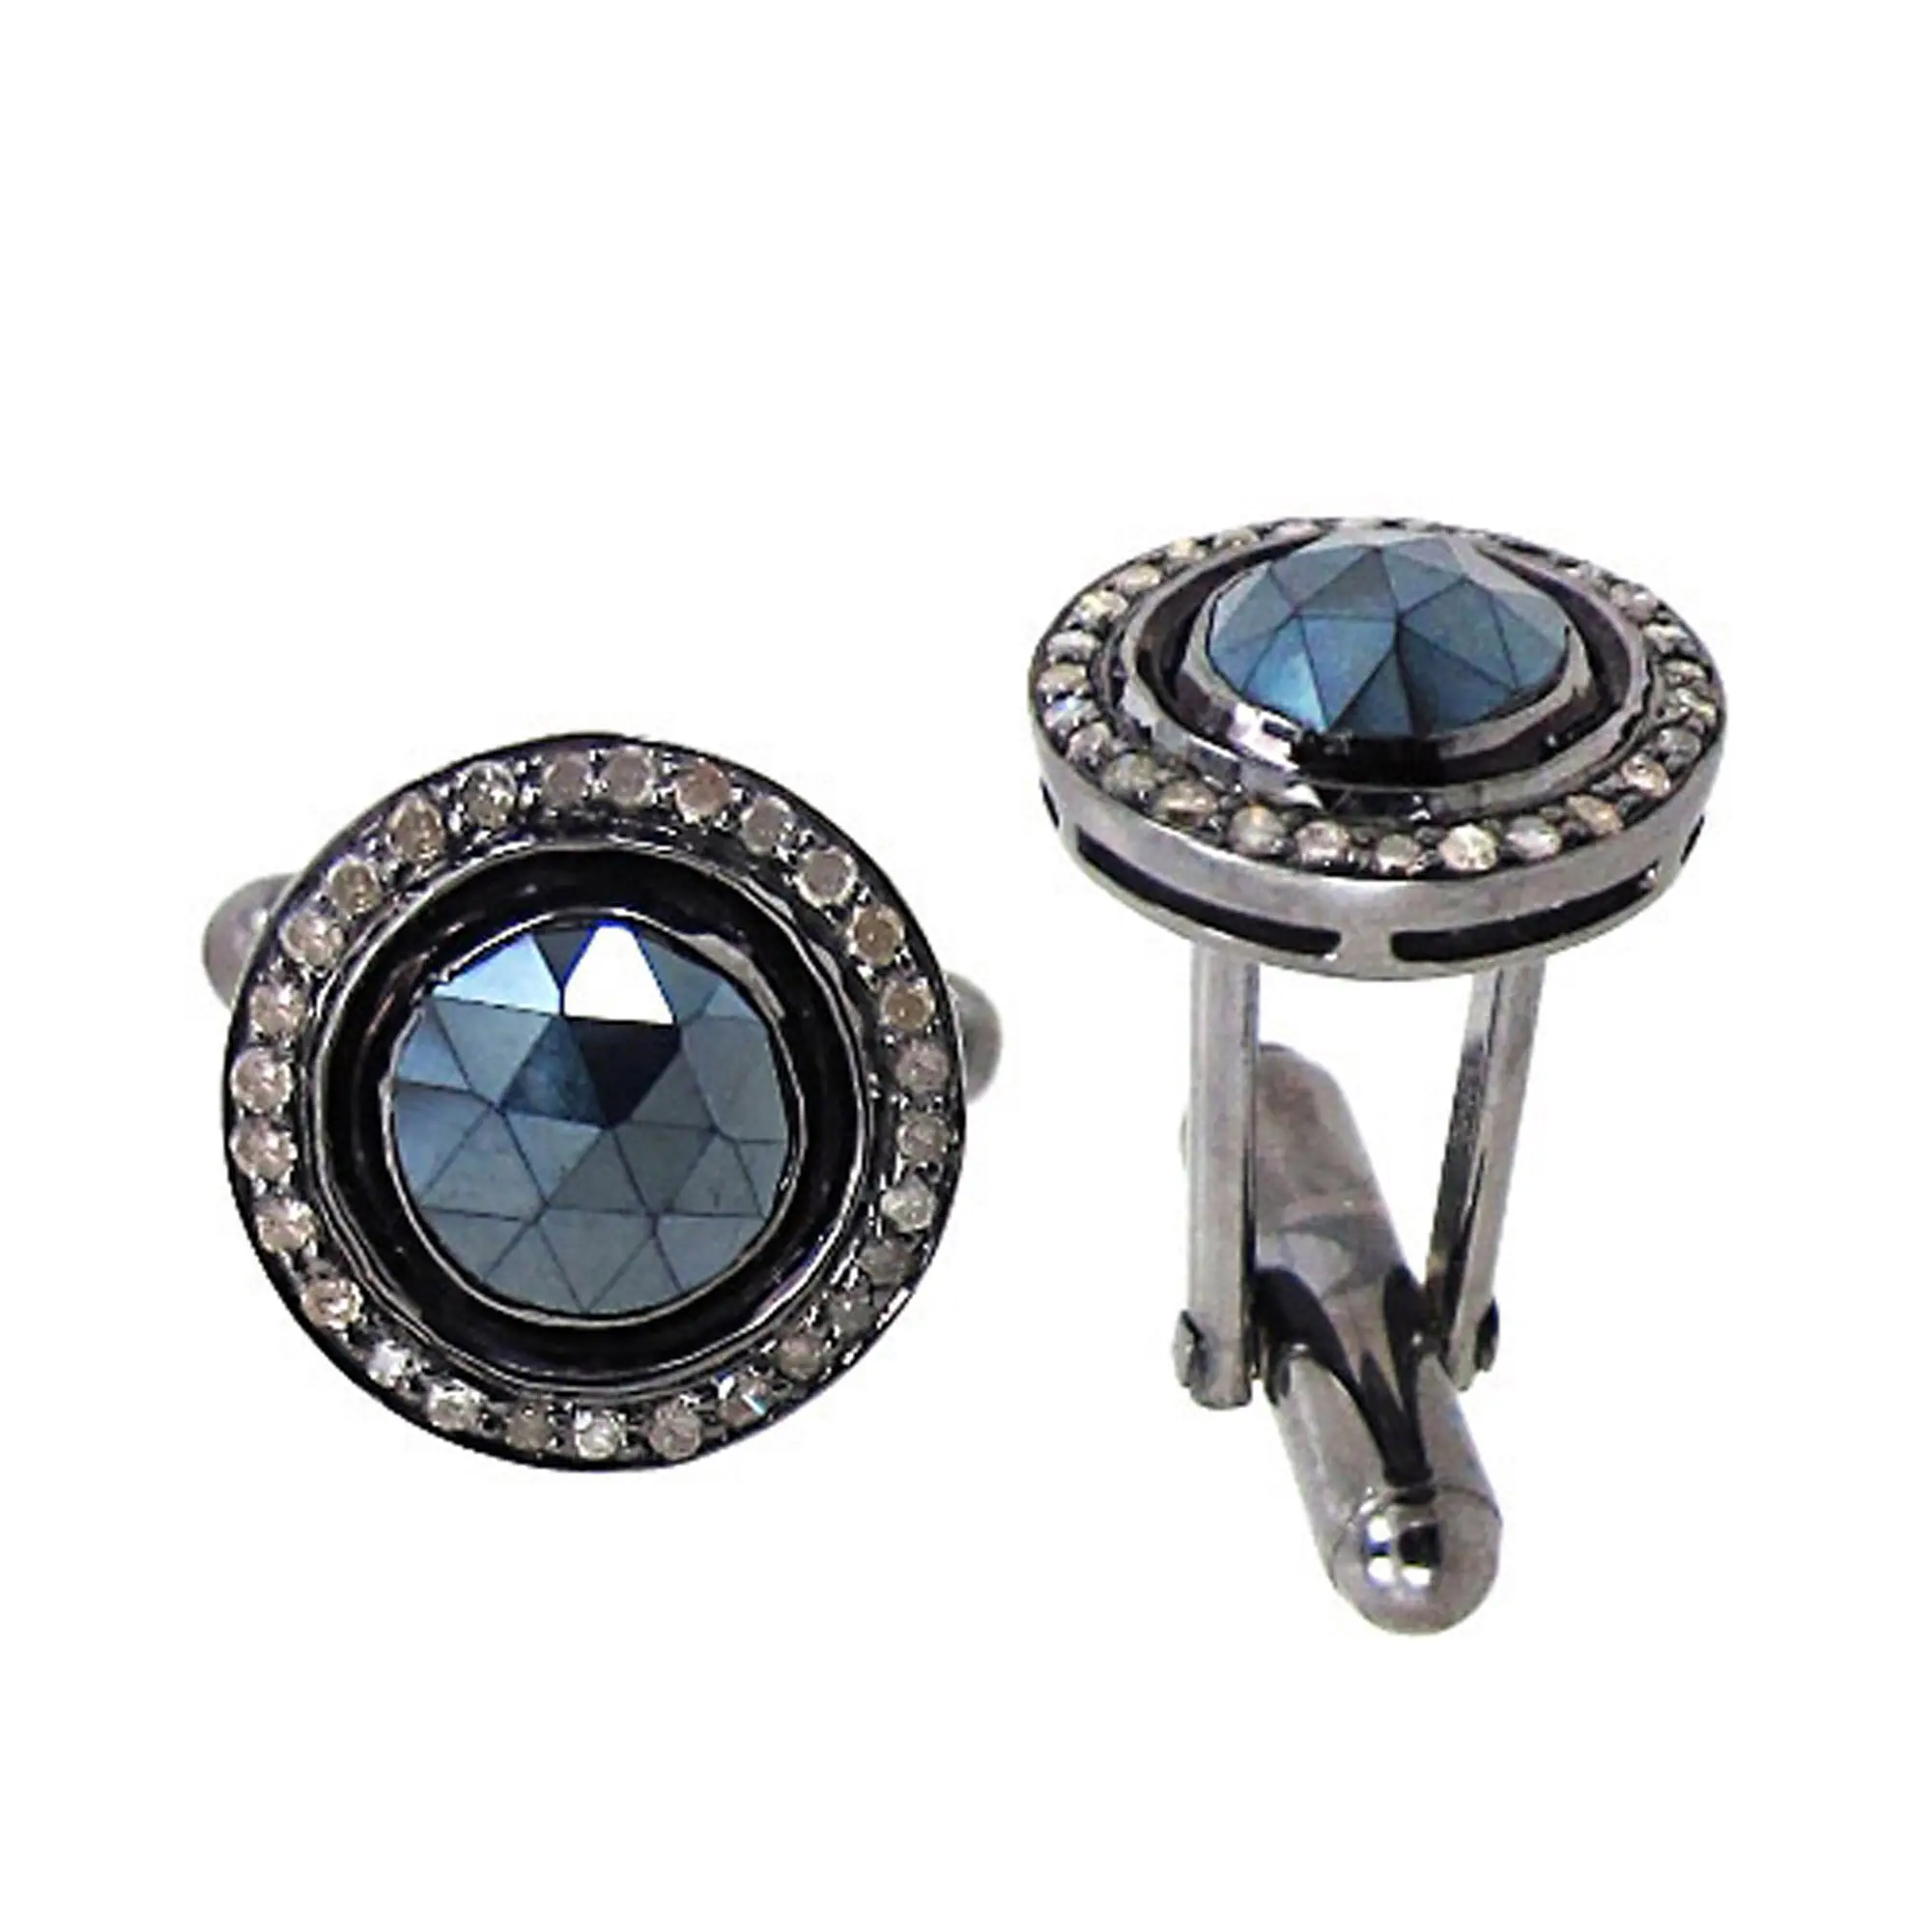 Ultimi accessori di moda Natural Pave Diamond Black Spinel Cuff link 925 Sterling Silver Tie Clips produttore di gioielleria raffinata